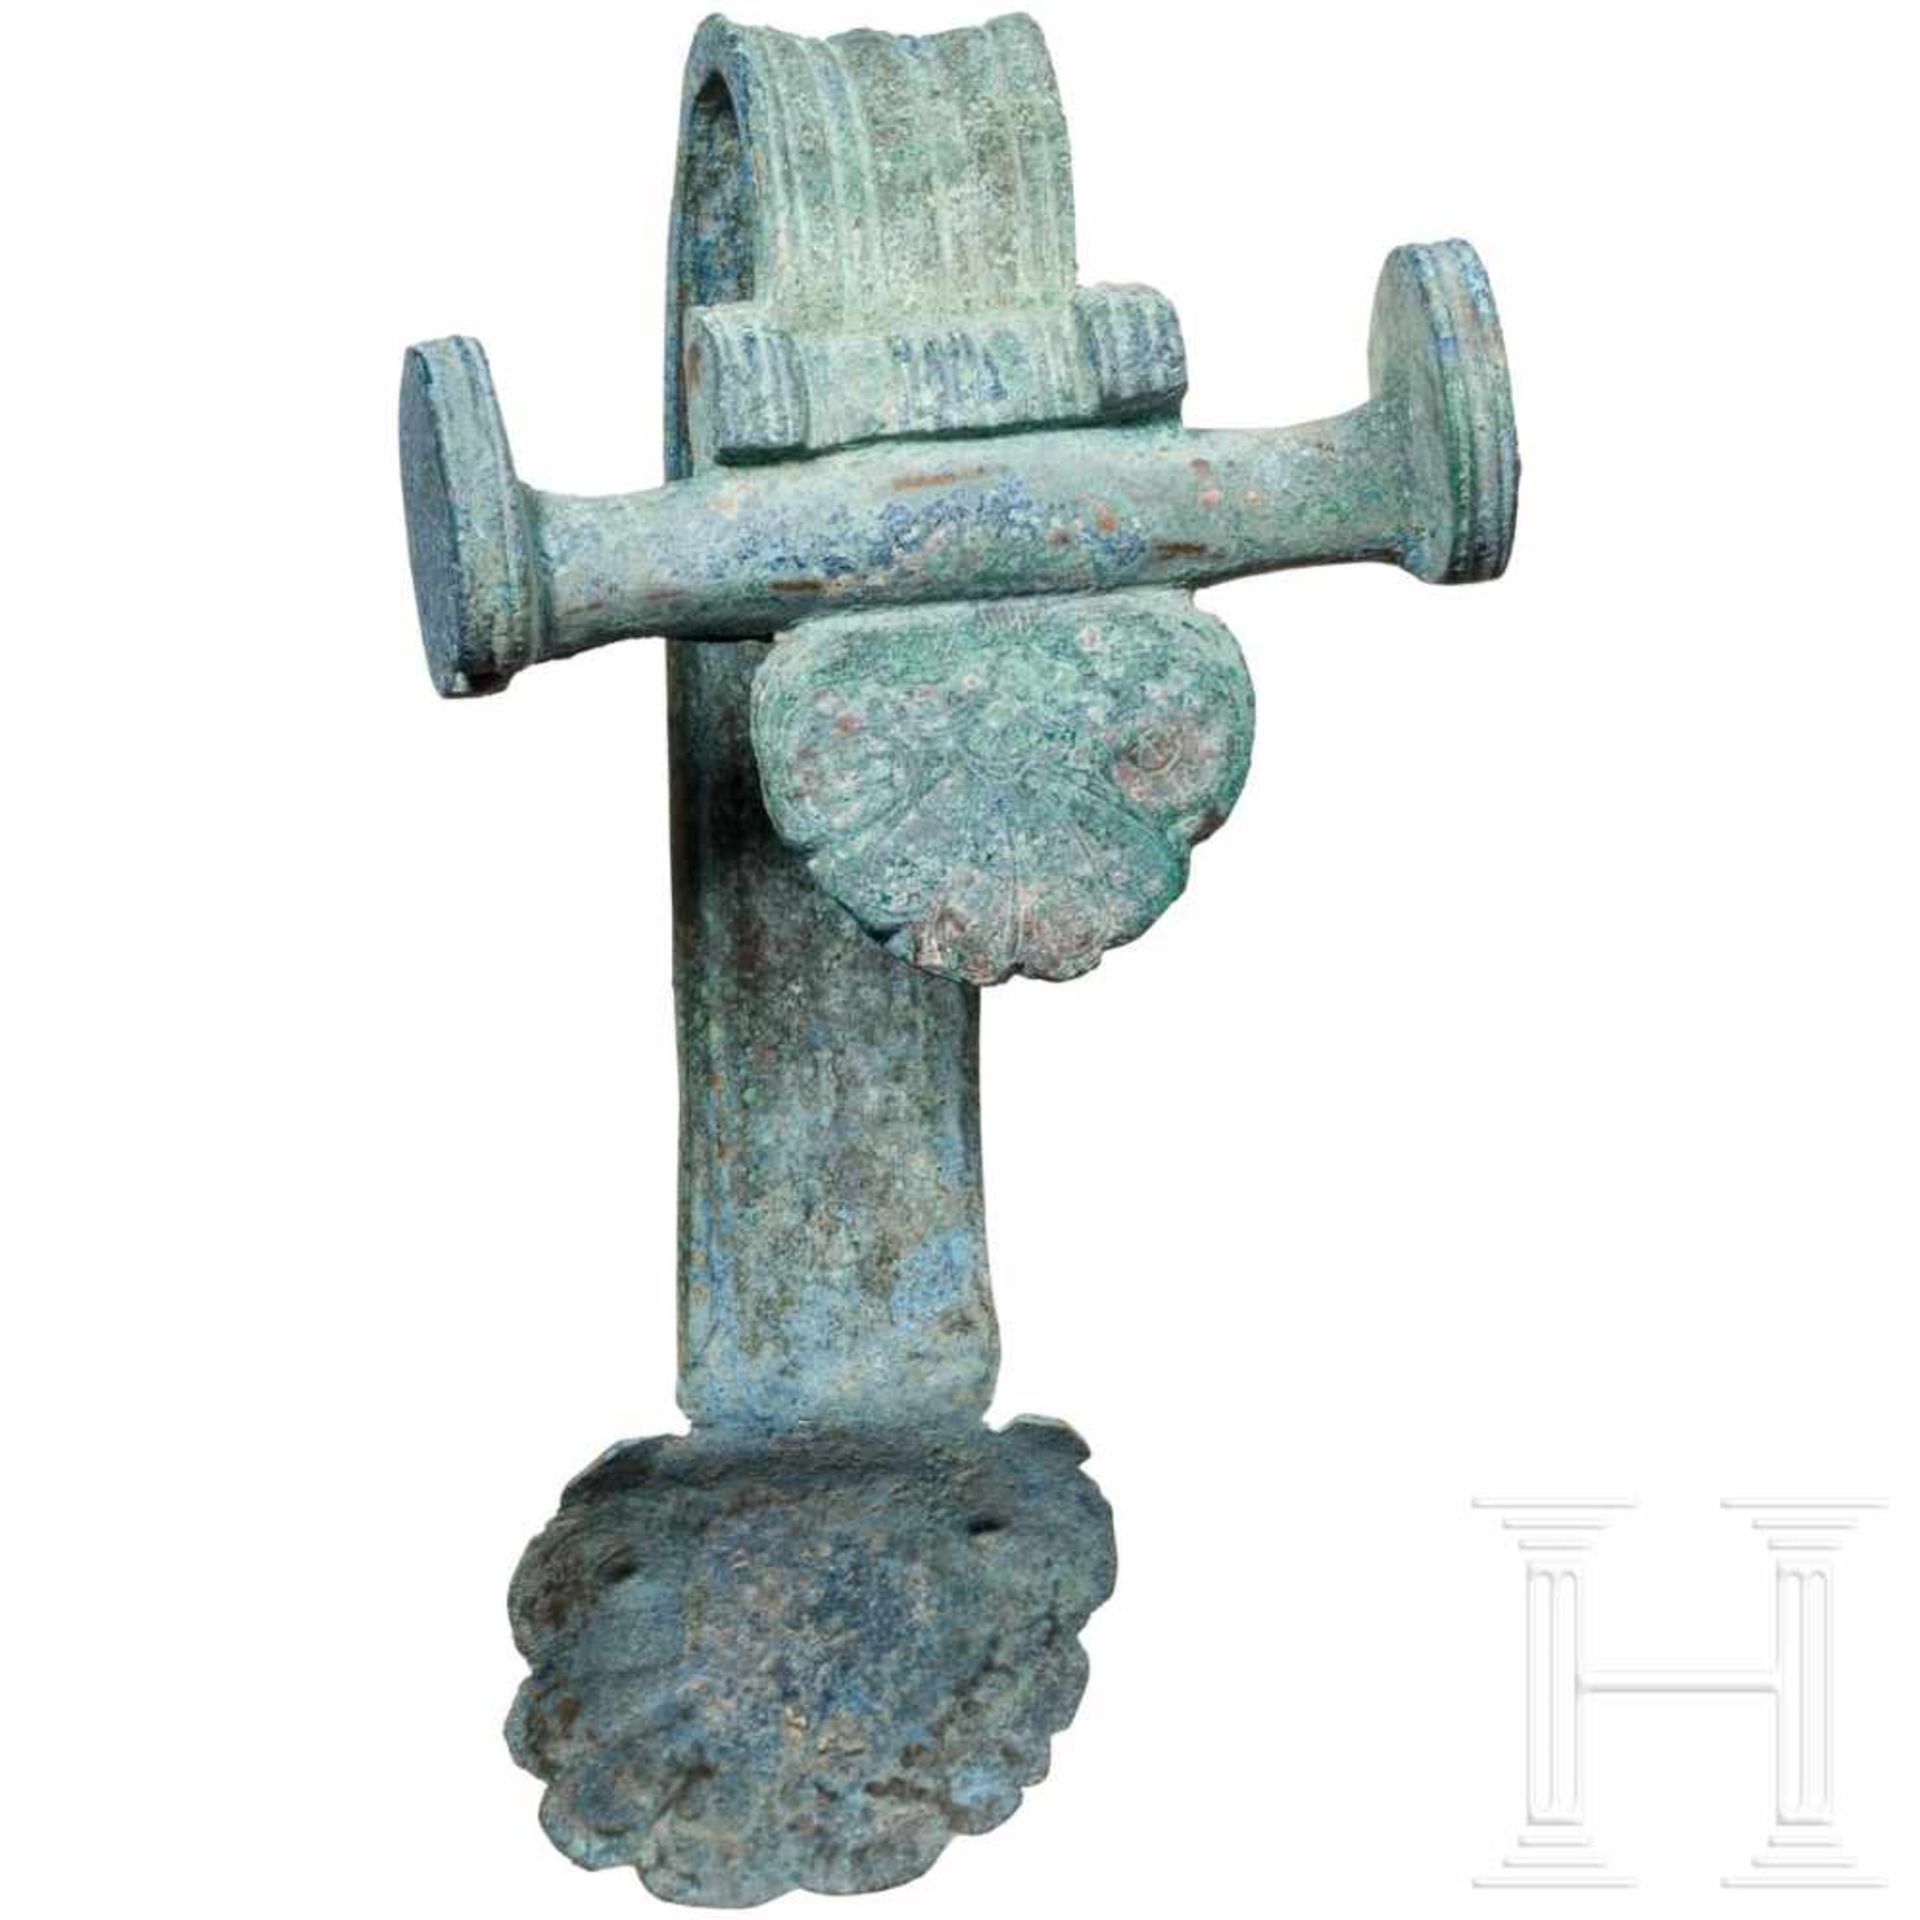 Henkelattasche eines Bronzegefäßes, Griechenland, 5. Jhdt. v. Chr. - Bild 5 aus 5